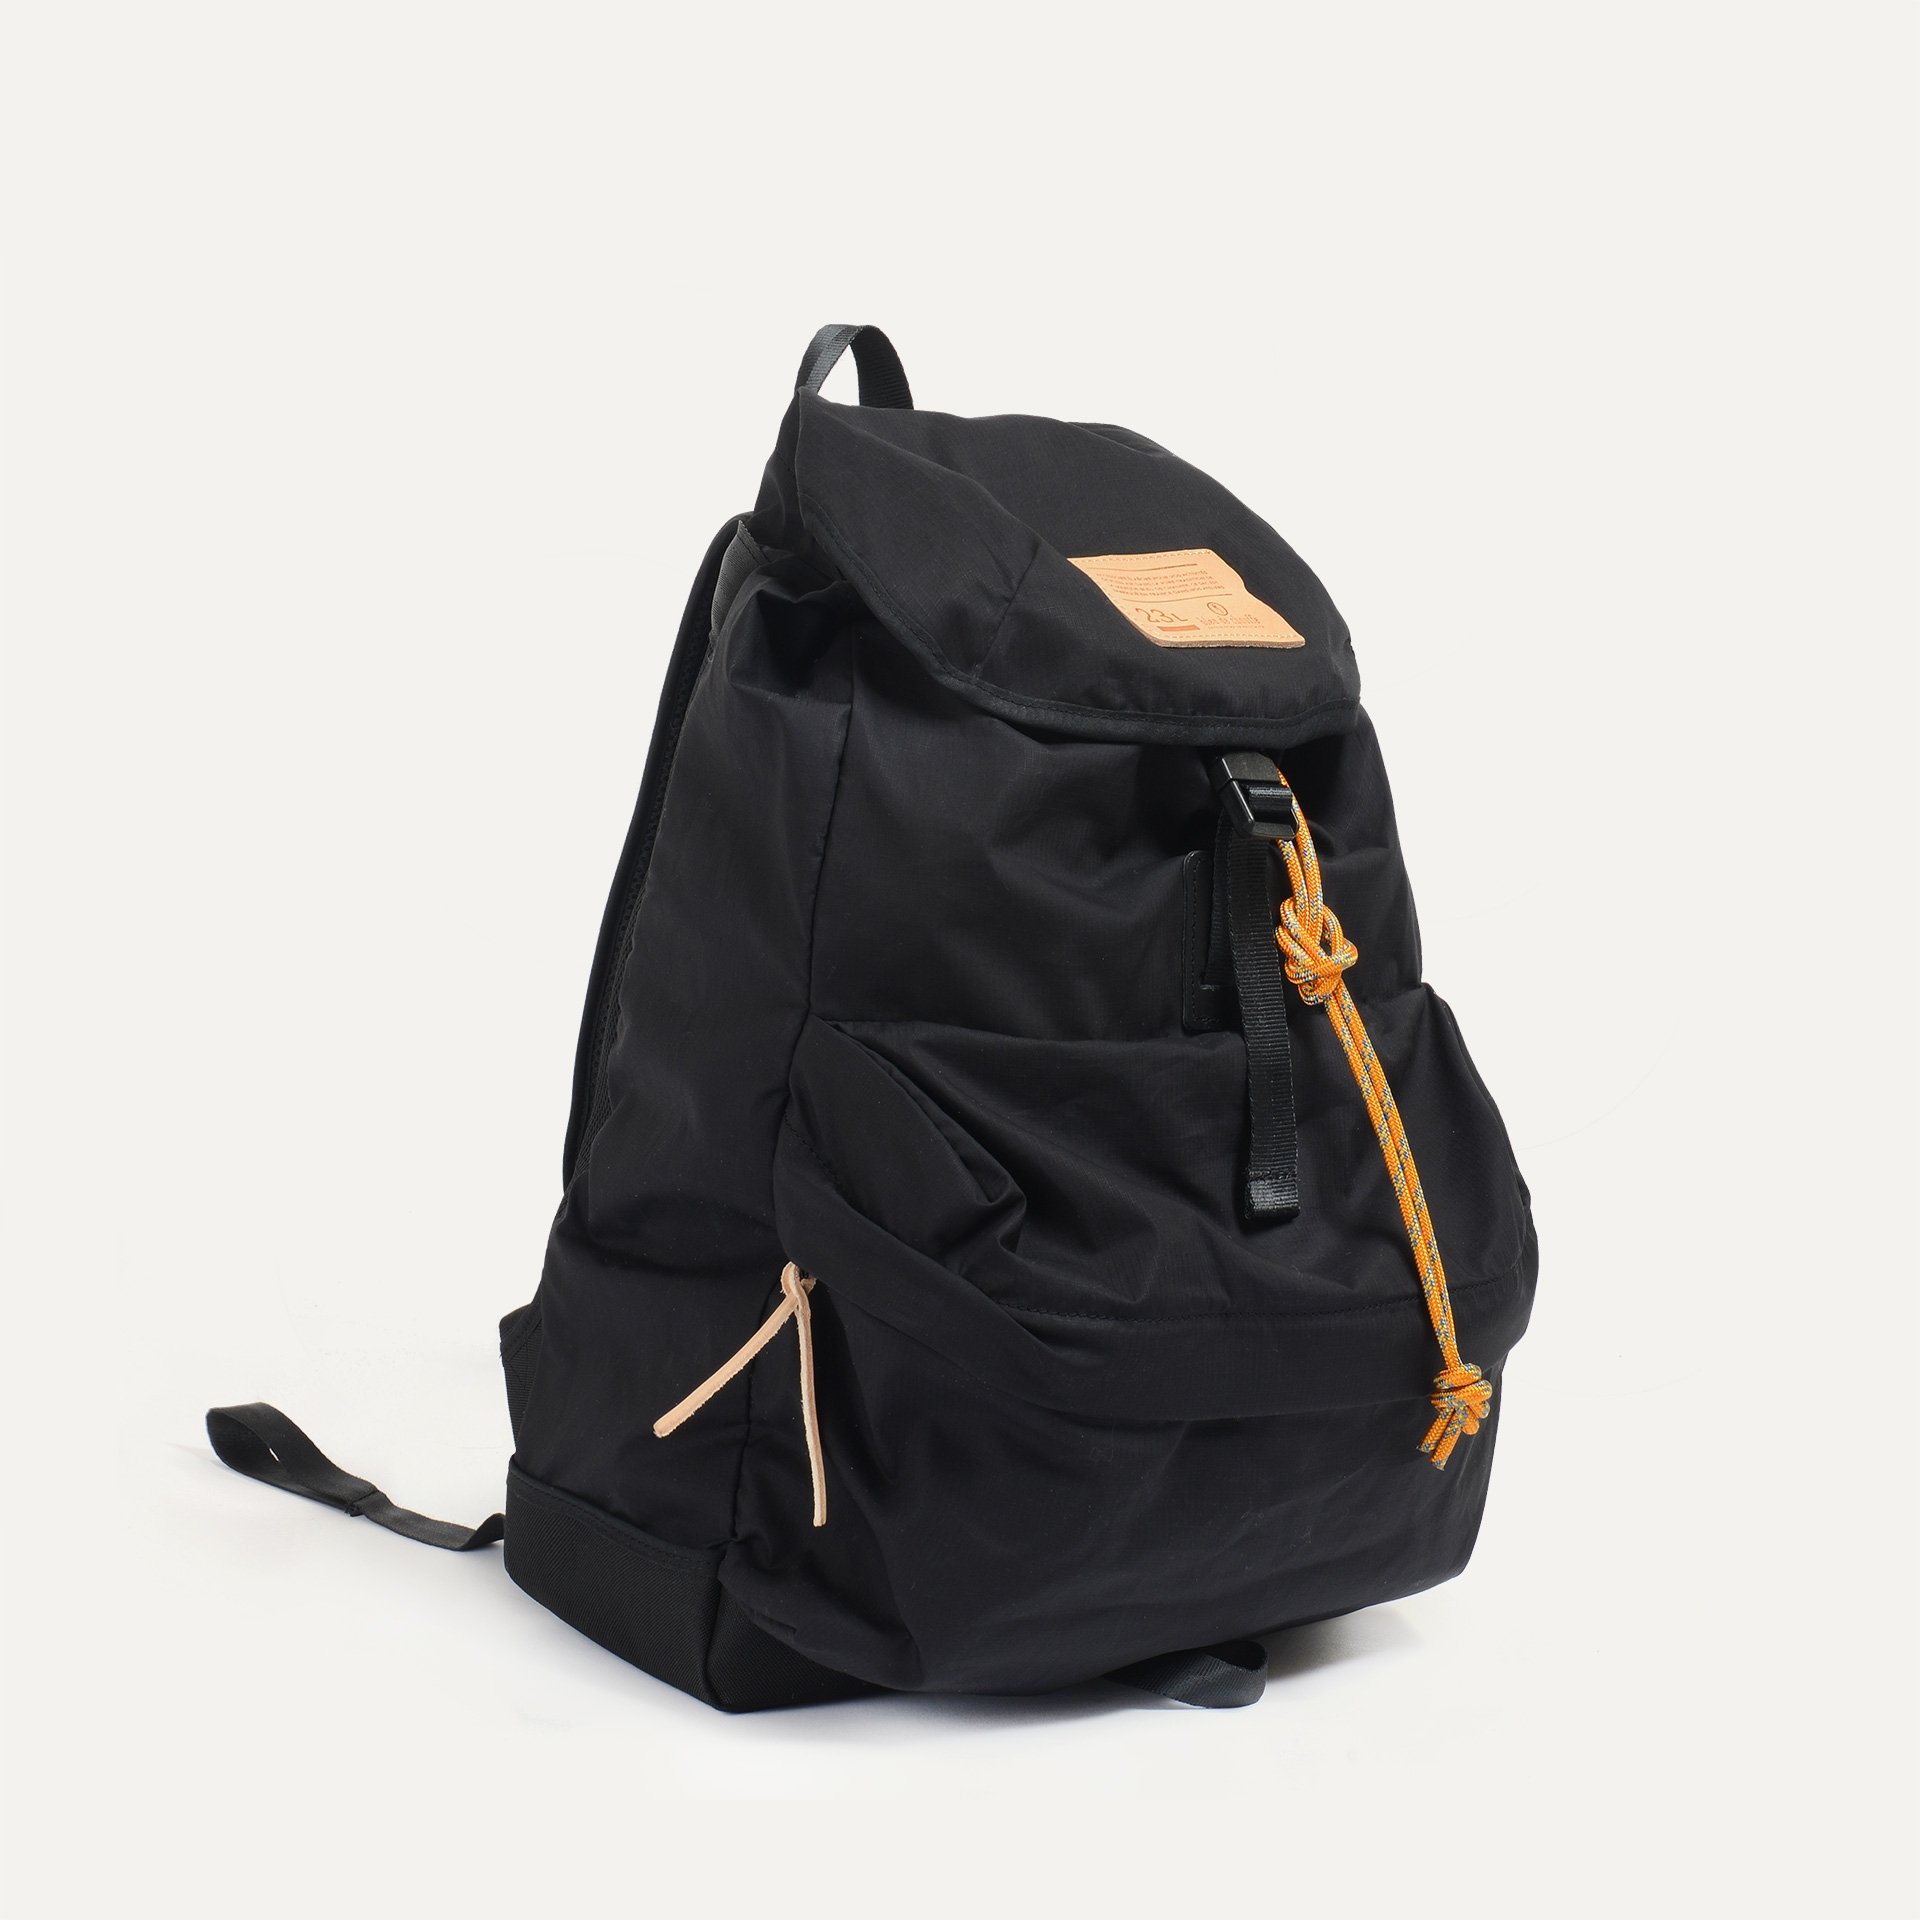 23L Bayou Backpack - Black (image n°1)